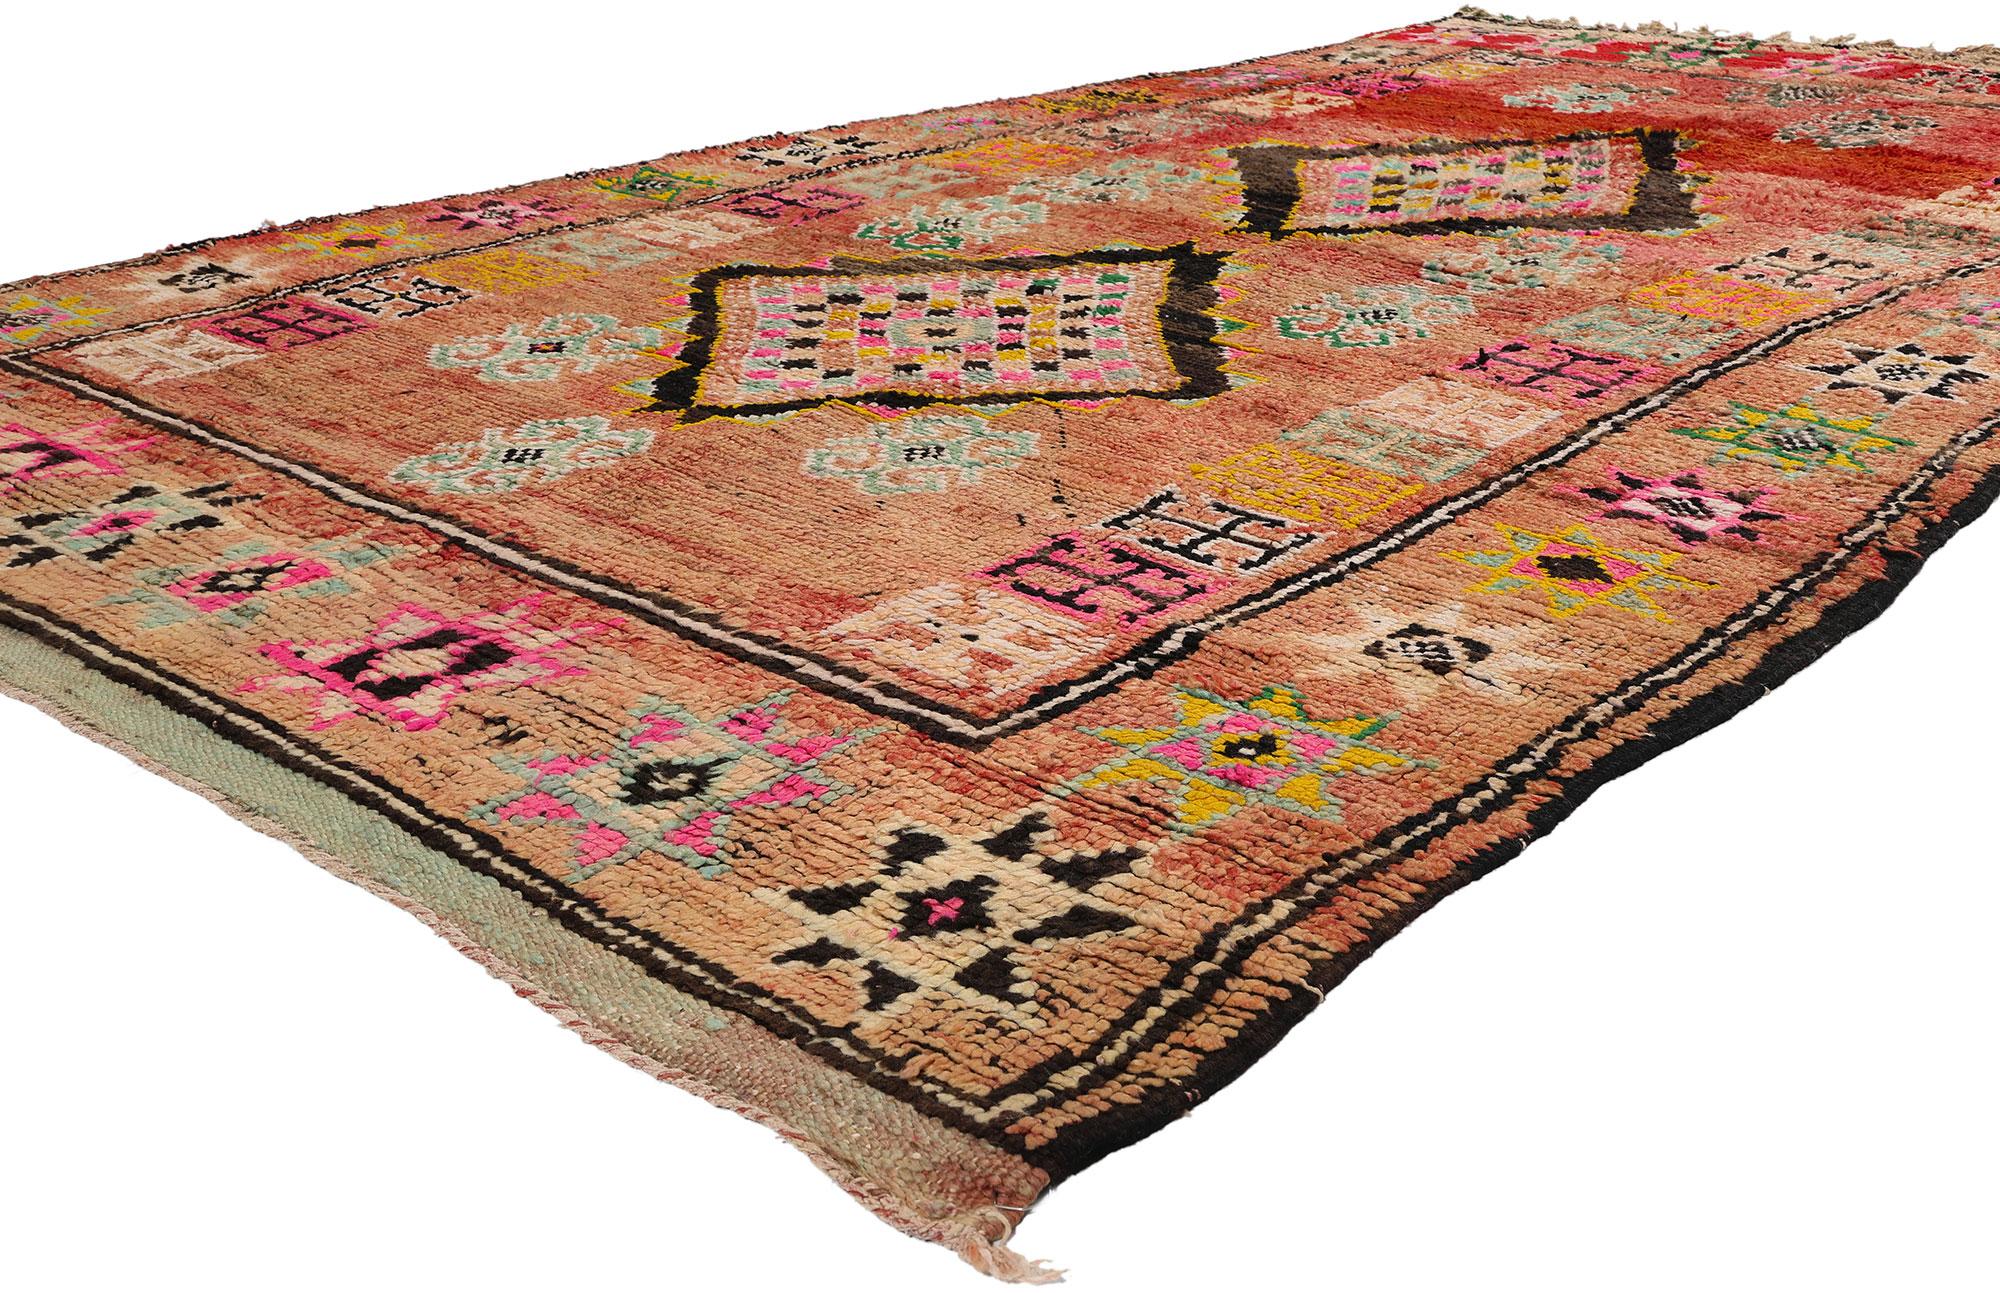 21747 Tapis marocain Boujad rouge vintage, 05'05 x 09'01. Originaires de la région du Boujad au Maroc, les tapis Boujad incarnent l'héritage artistique vibrant des tribus berbères, notamment les Haouz et les Rehamna. Ces tapis méticuleusement